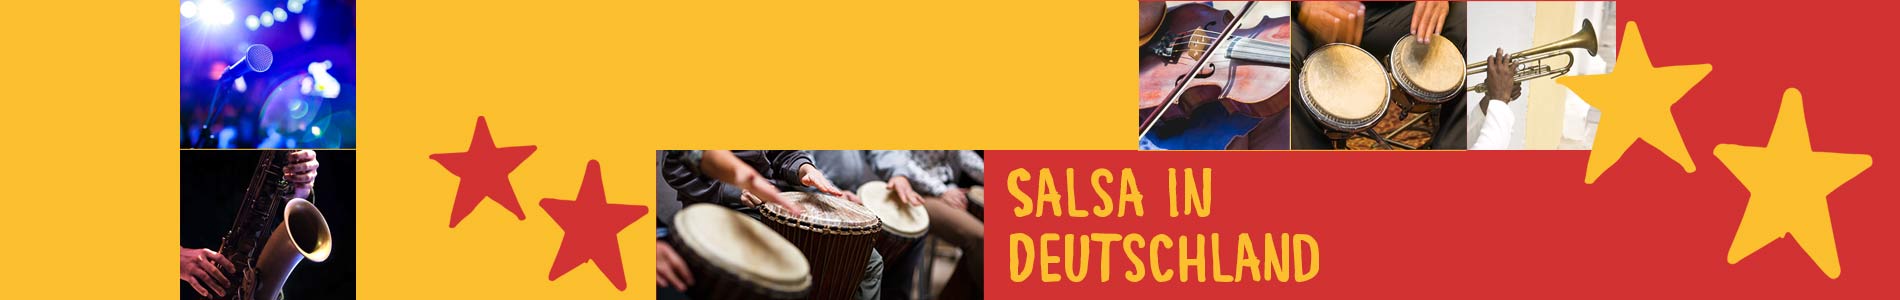 Salsa in Dannstadt-Schauernheim – Salsa lernen und tanzen, Tanzkurse, Partys, Veranstaltungen